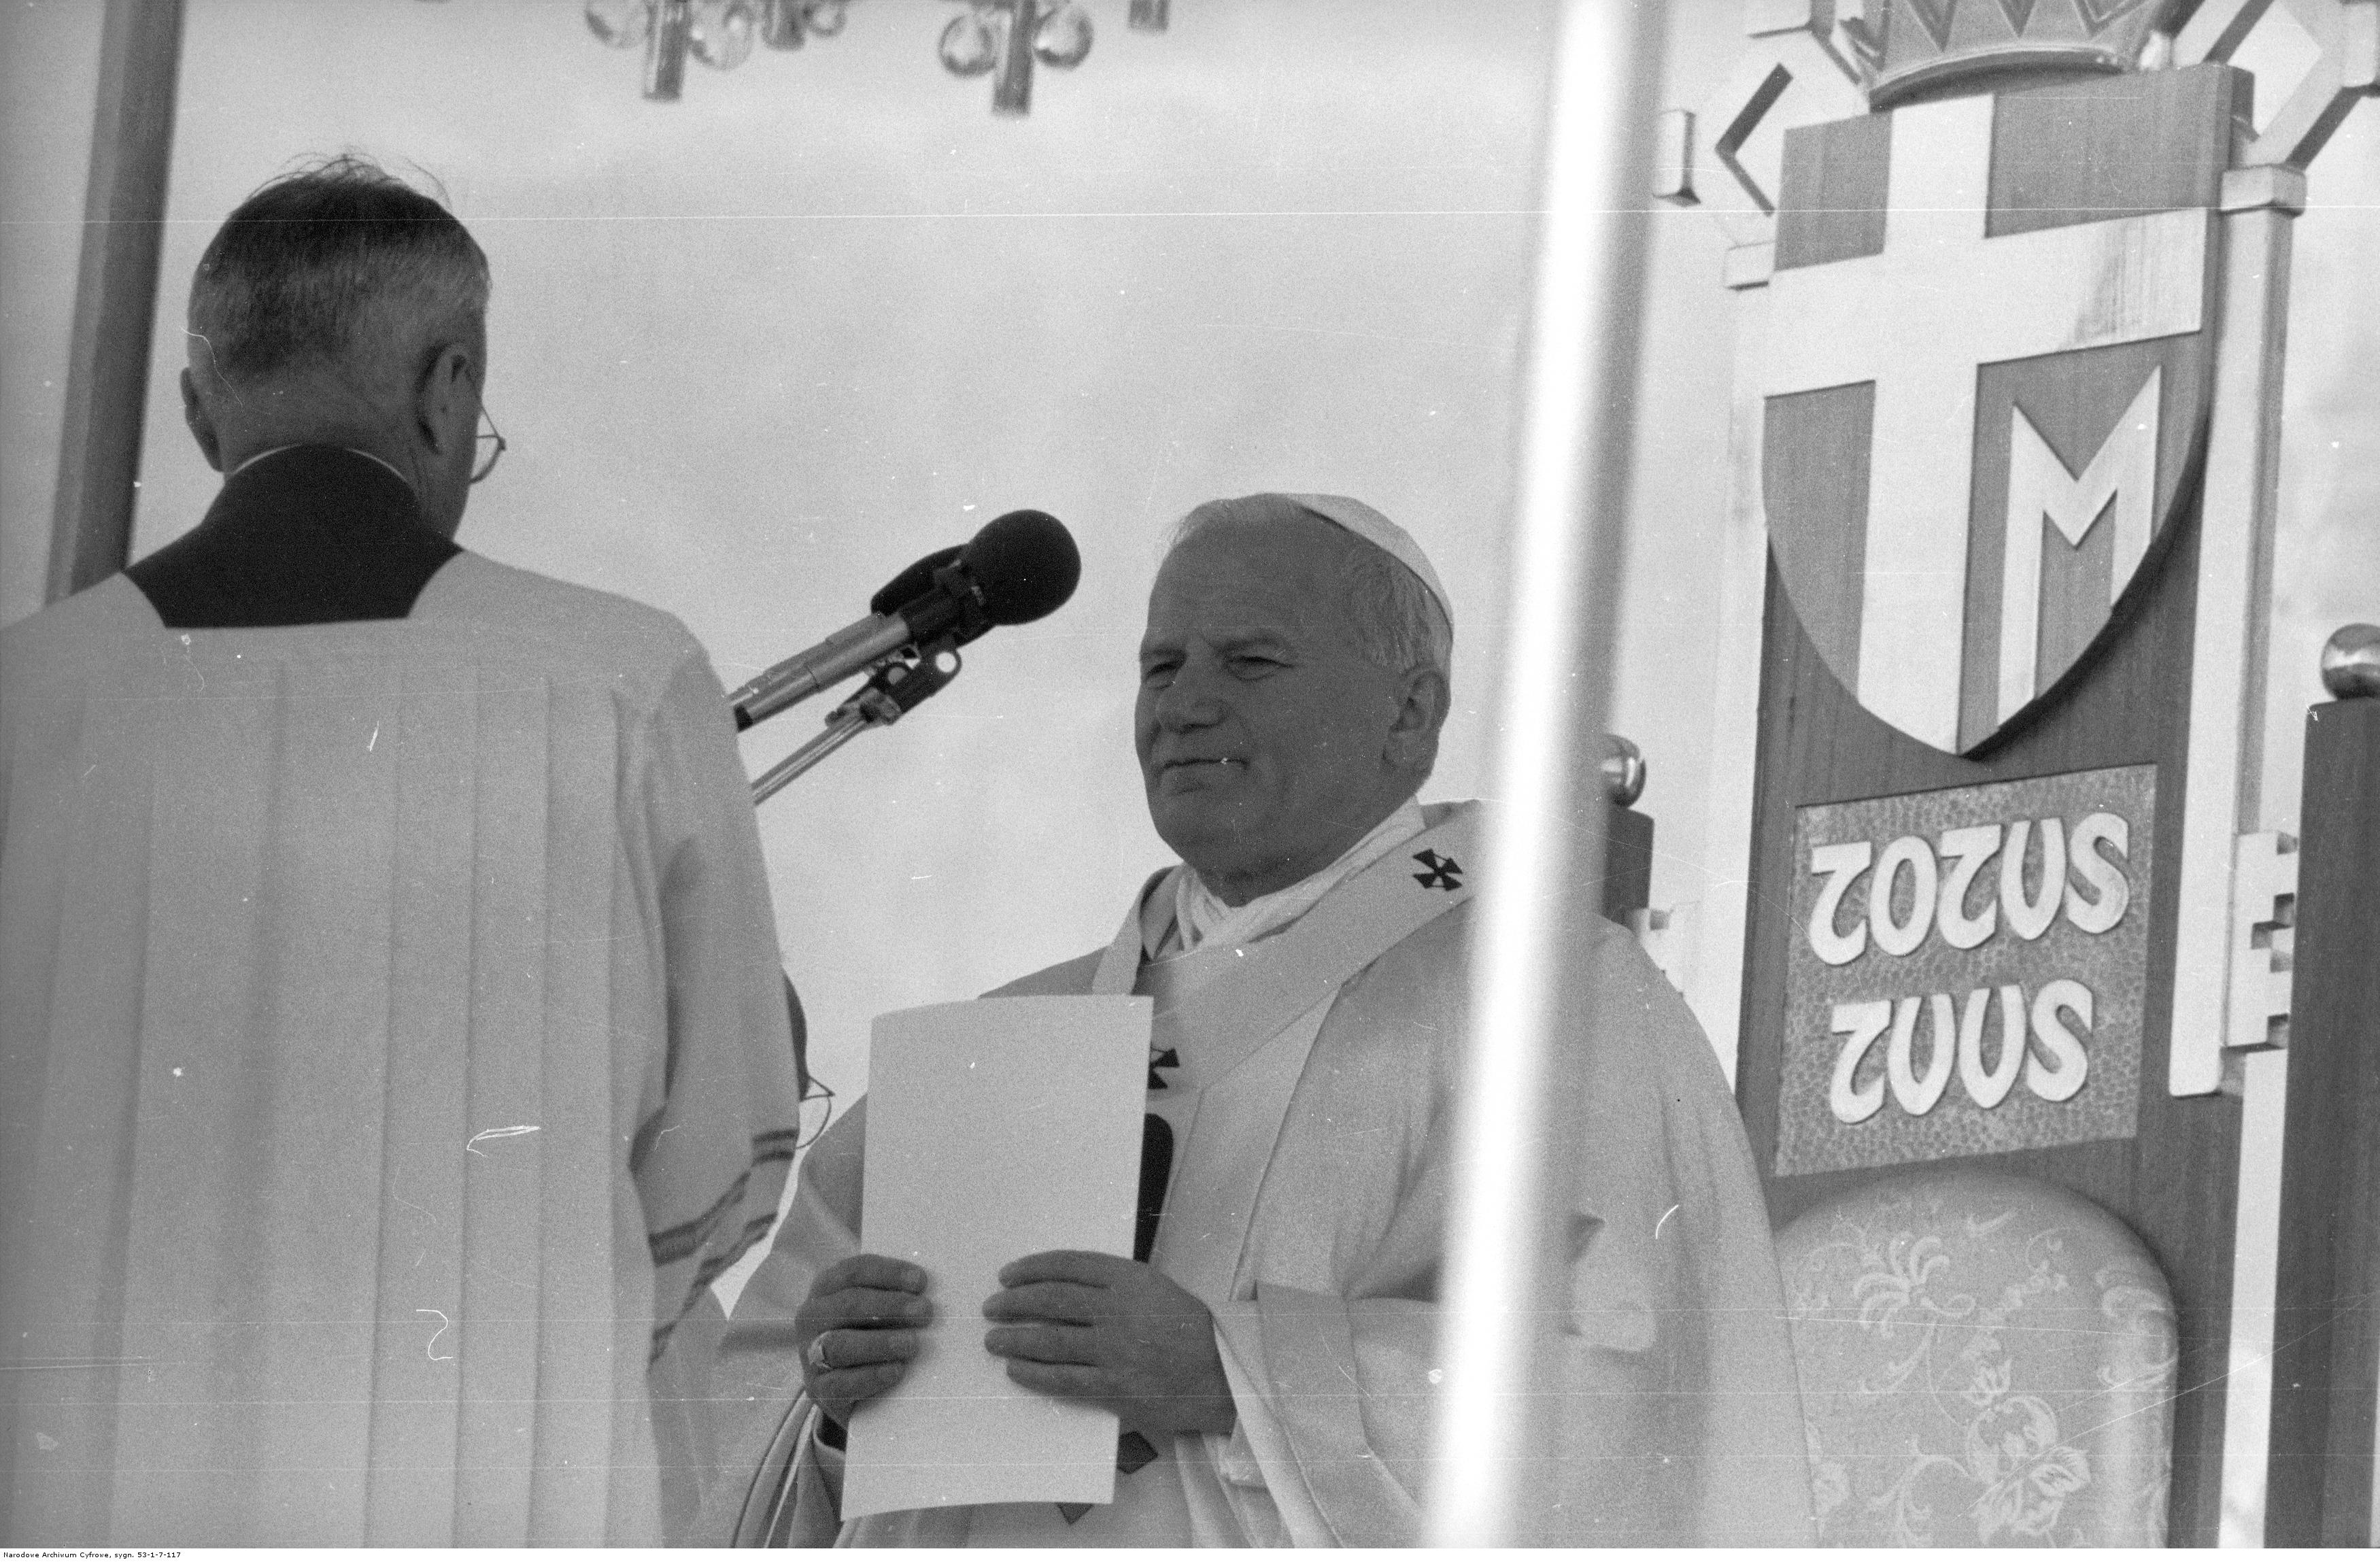 W centrum Jan Paweł II przygotowuje się do homilii. Z lewej widoczny ceremoniarz papieski, ks. prał. Virgilio Noe przygotowujący mikrofon. Z prawej widoczny herb papieża Jana Pawła II jako element tronu papieskiego.